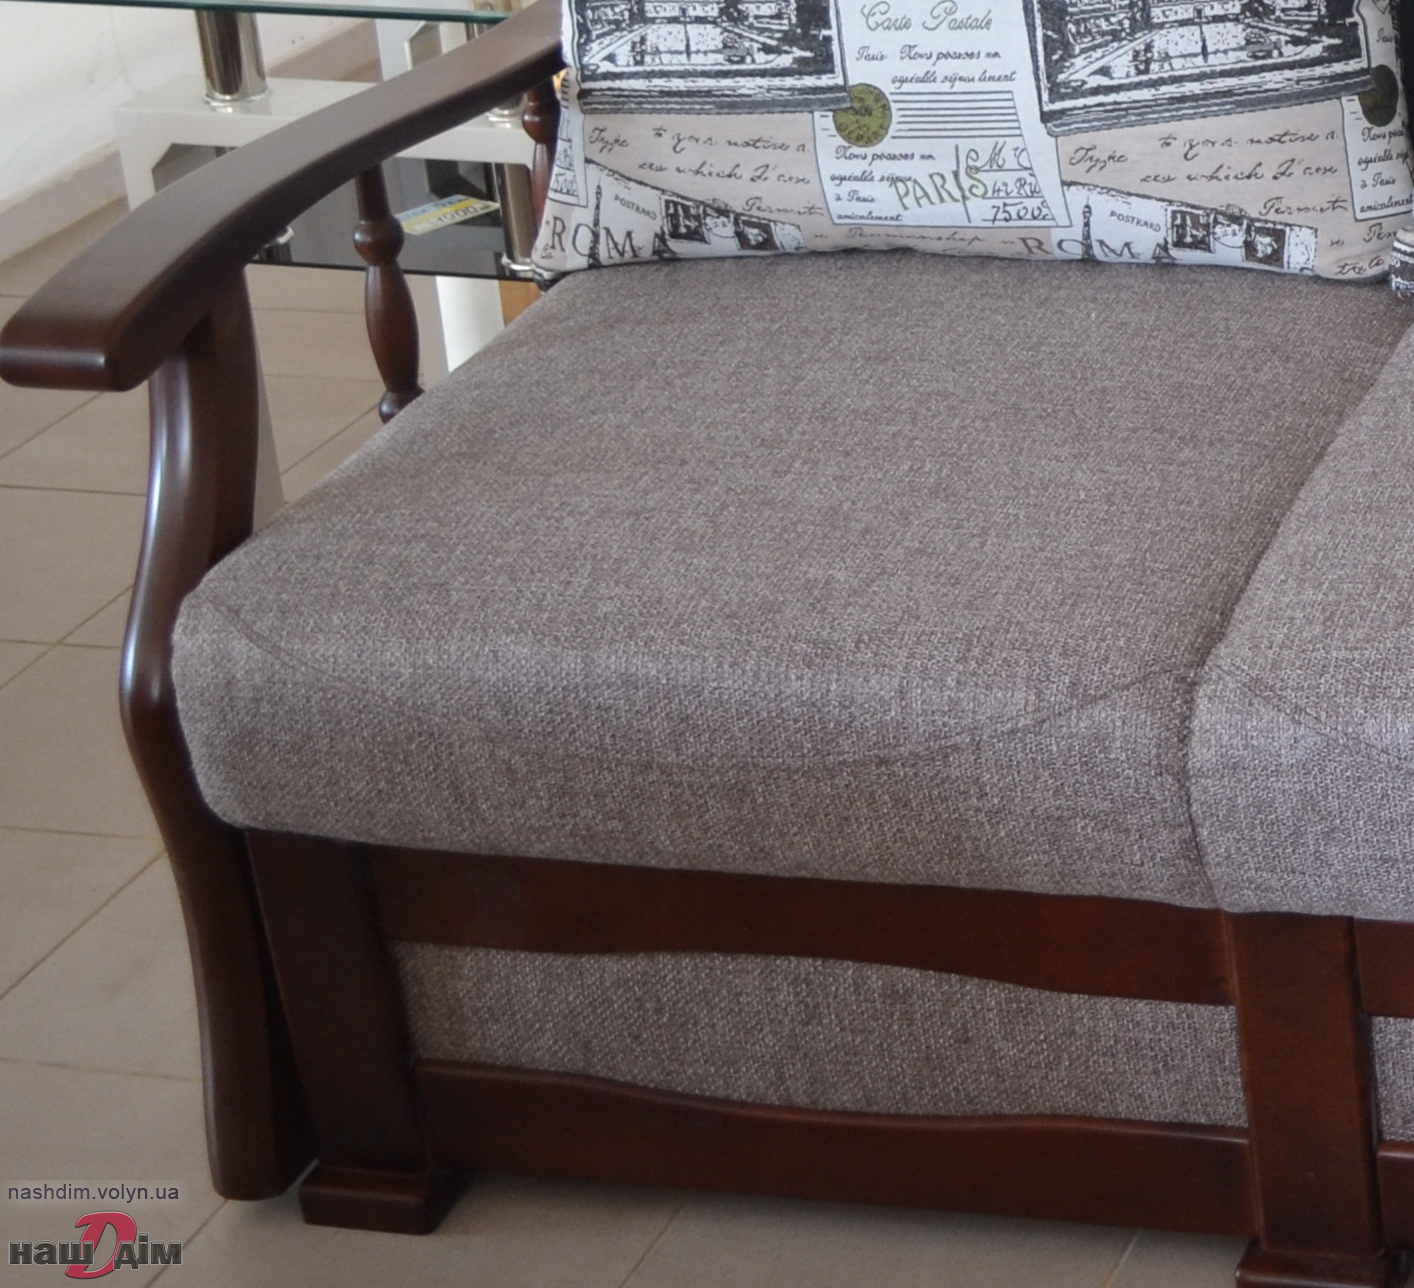 Галич диван розкладний виробника Юра ID431-2 матеріали та колір